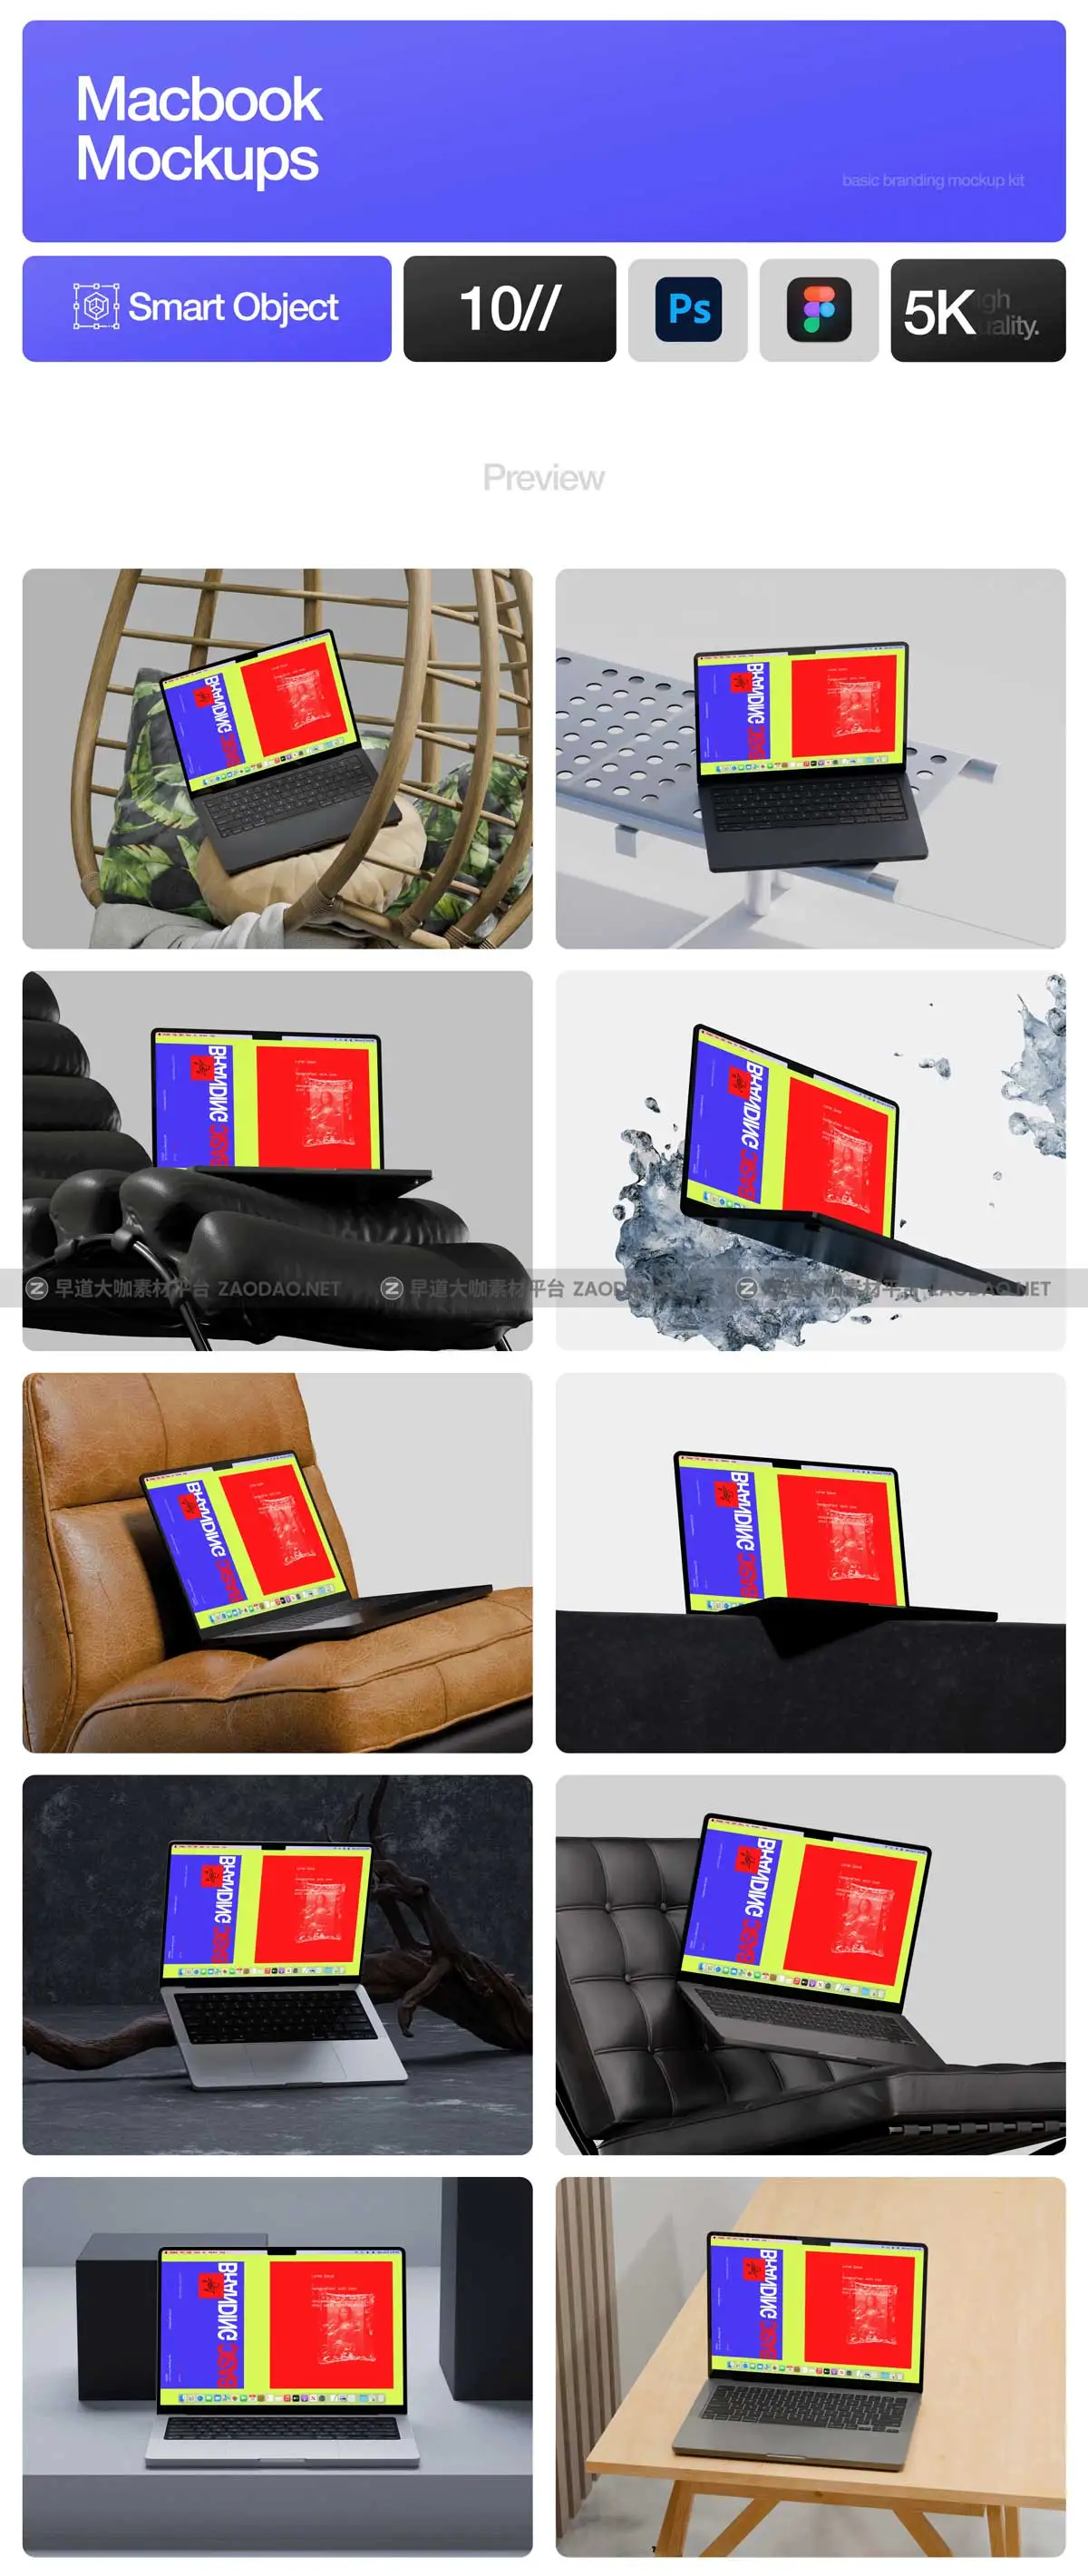 10款创意网站界面设计作品集贴图苹果MacBook Pro屏幕演示PS贴图样机模板 Macbook Pro Mockups – Basic Branding Mockup Kit插图6